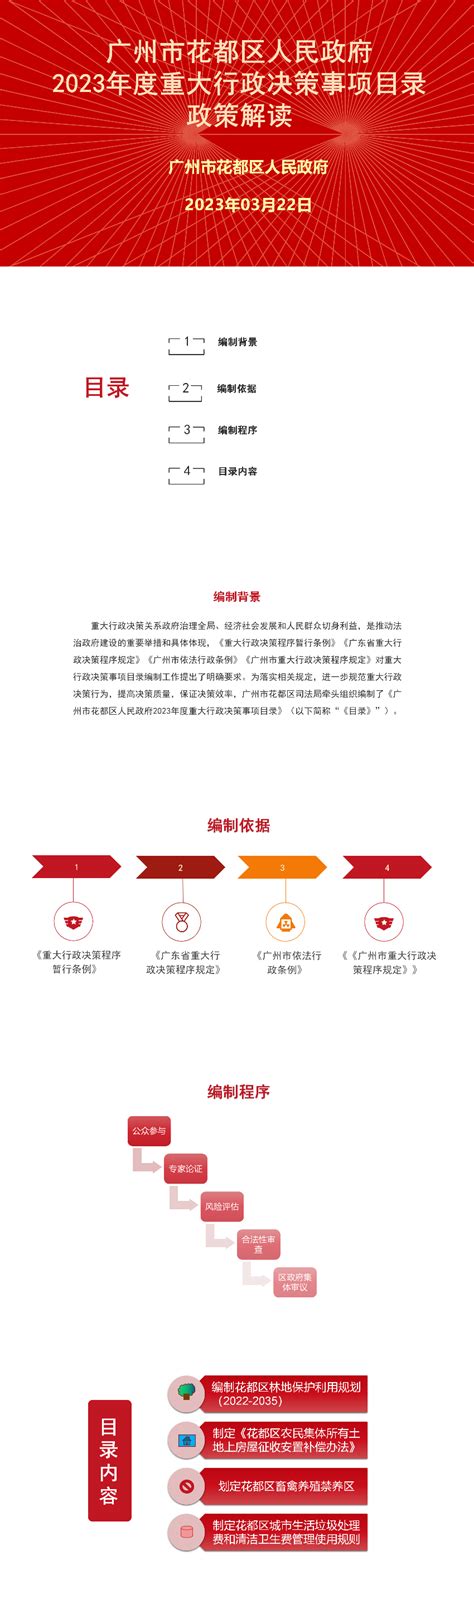 热点解读_（音频、图文解读）广州市花都区人民政府2023年度重大行政决策事项目录政策解读